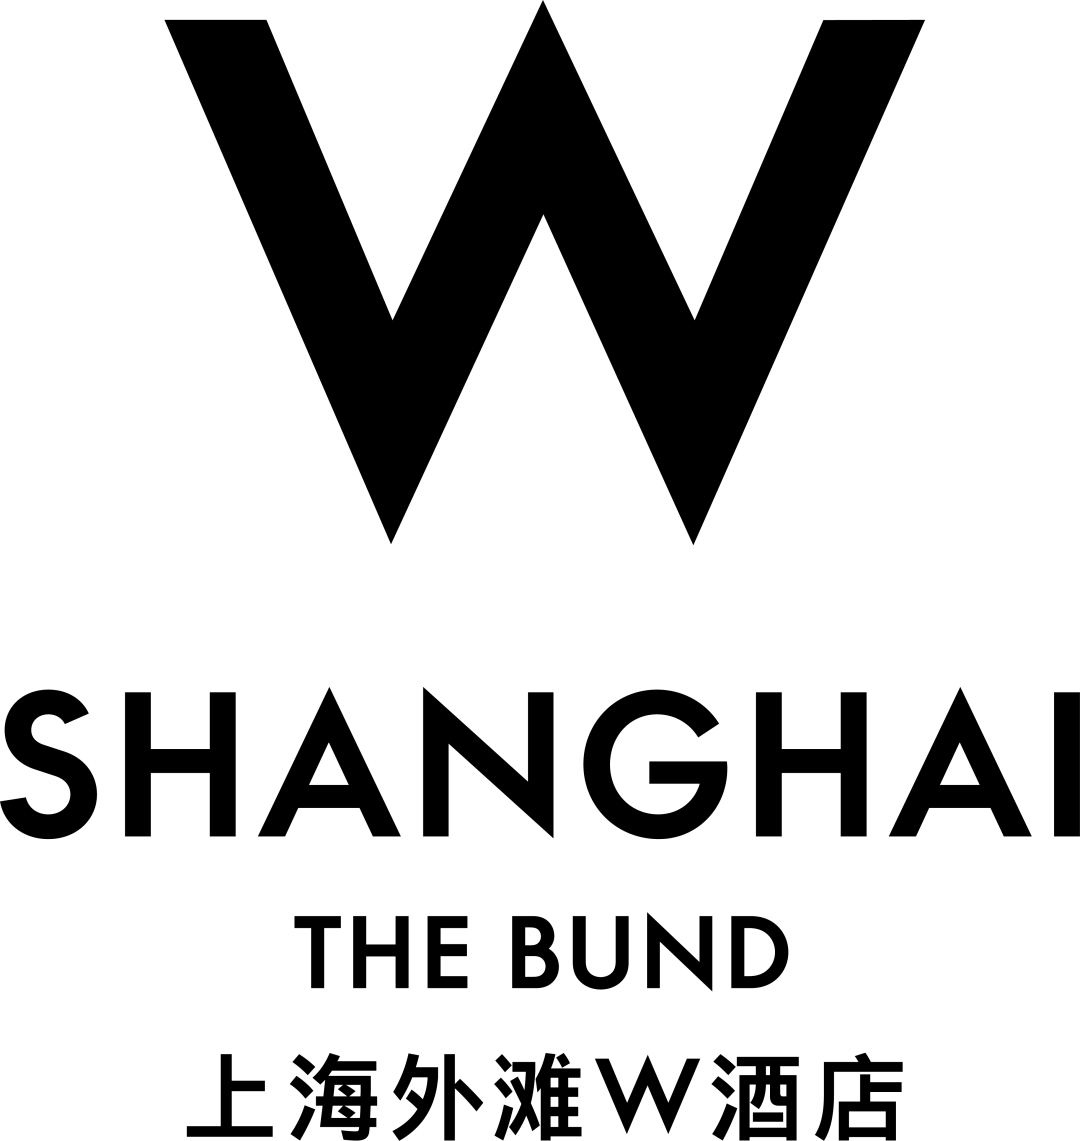 赞助商招募进行时 | 100% CHAMPAGNE China 2024，加入香槟自由的美好生活